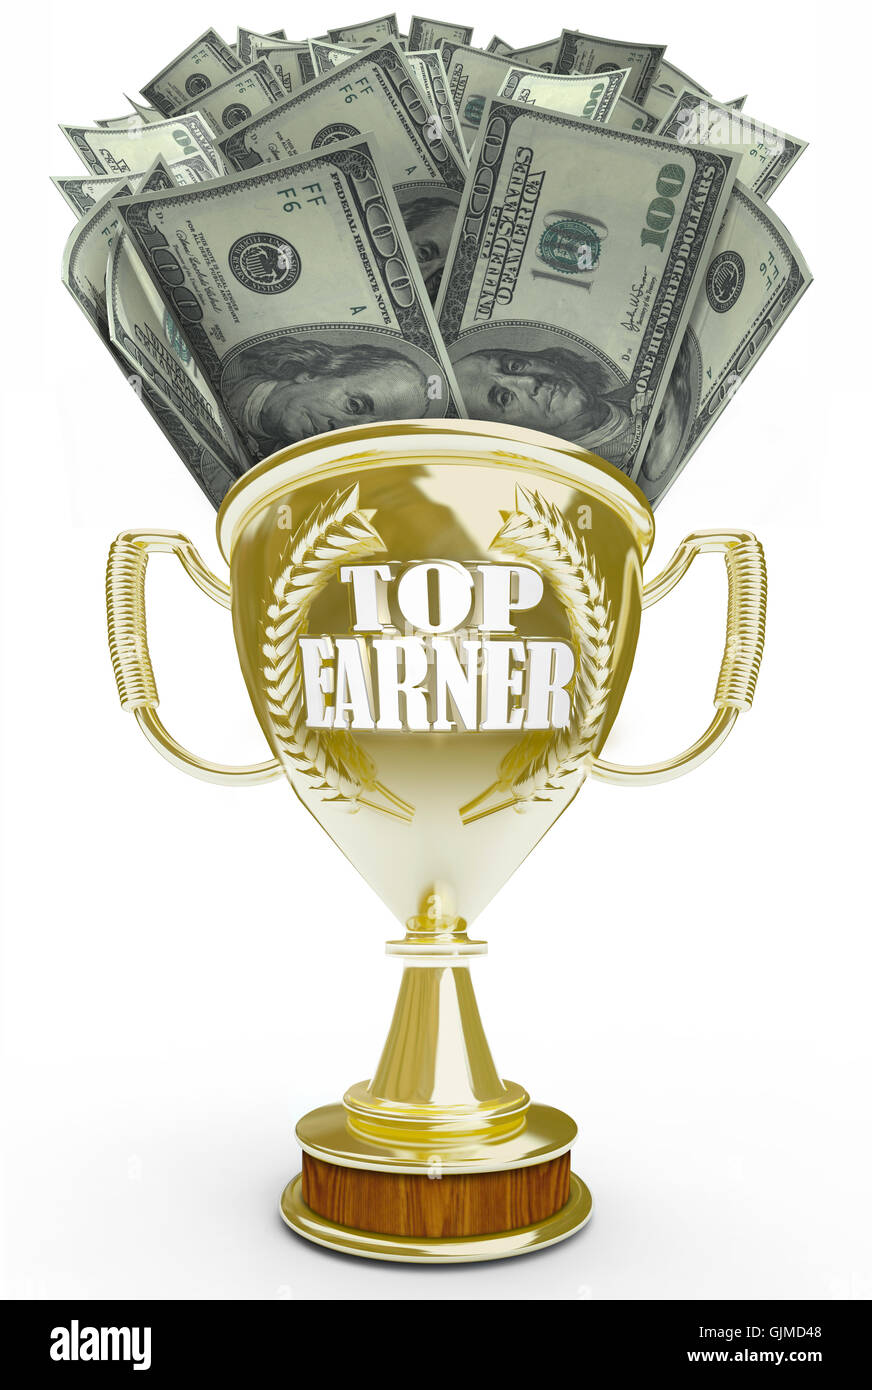 Top Earner - Cash in Golden Trophy Stock Photo